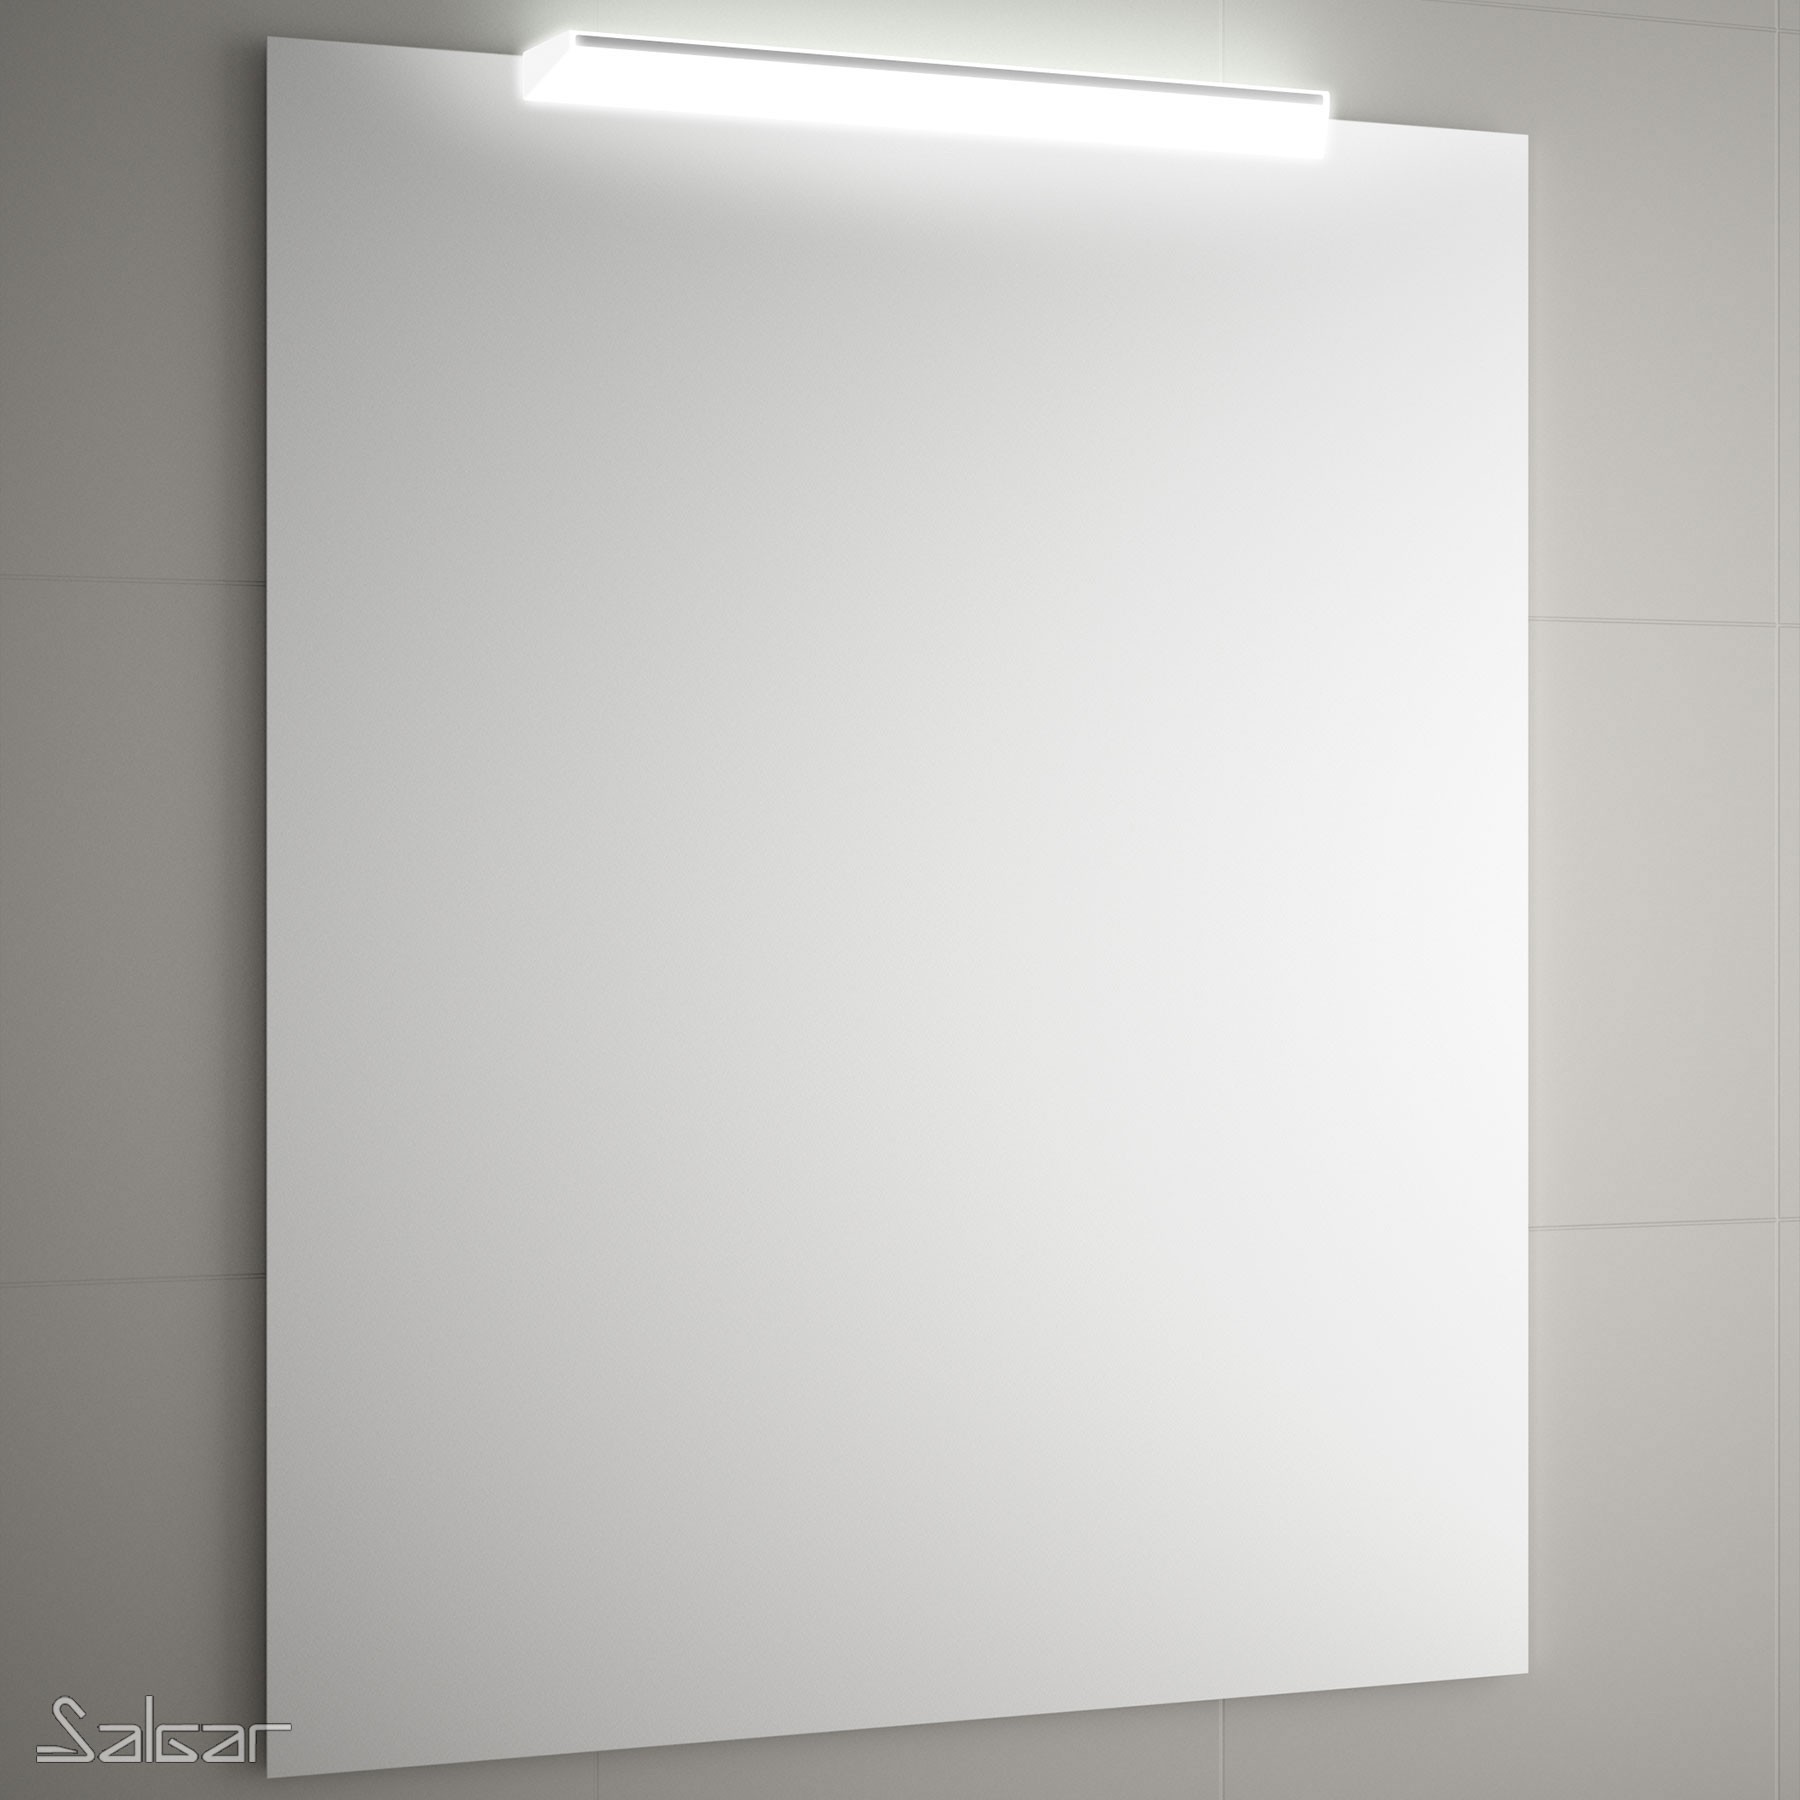 Applique de salle de bains Gamme PRO SALGAR BOREAL 500 blanc luminaire led (8 W.) IP 44 (568lm) (5700 K) fixation m - Réf:84123